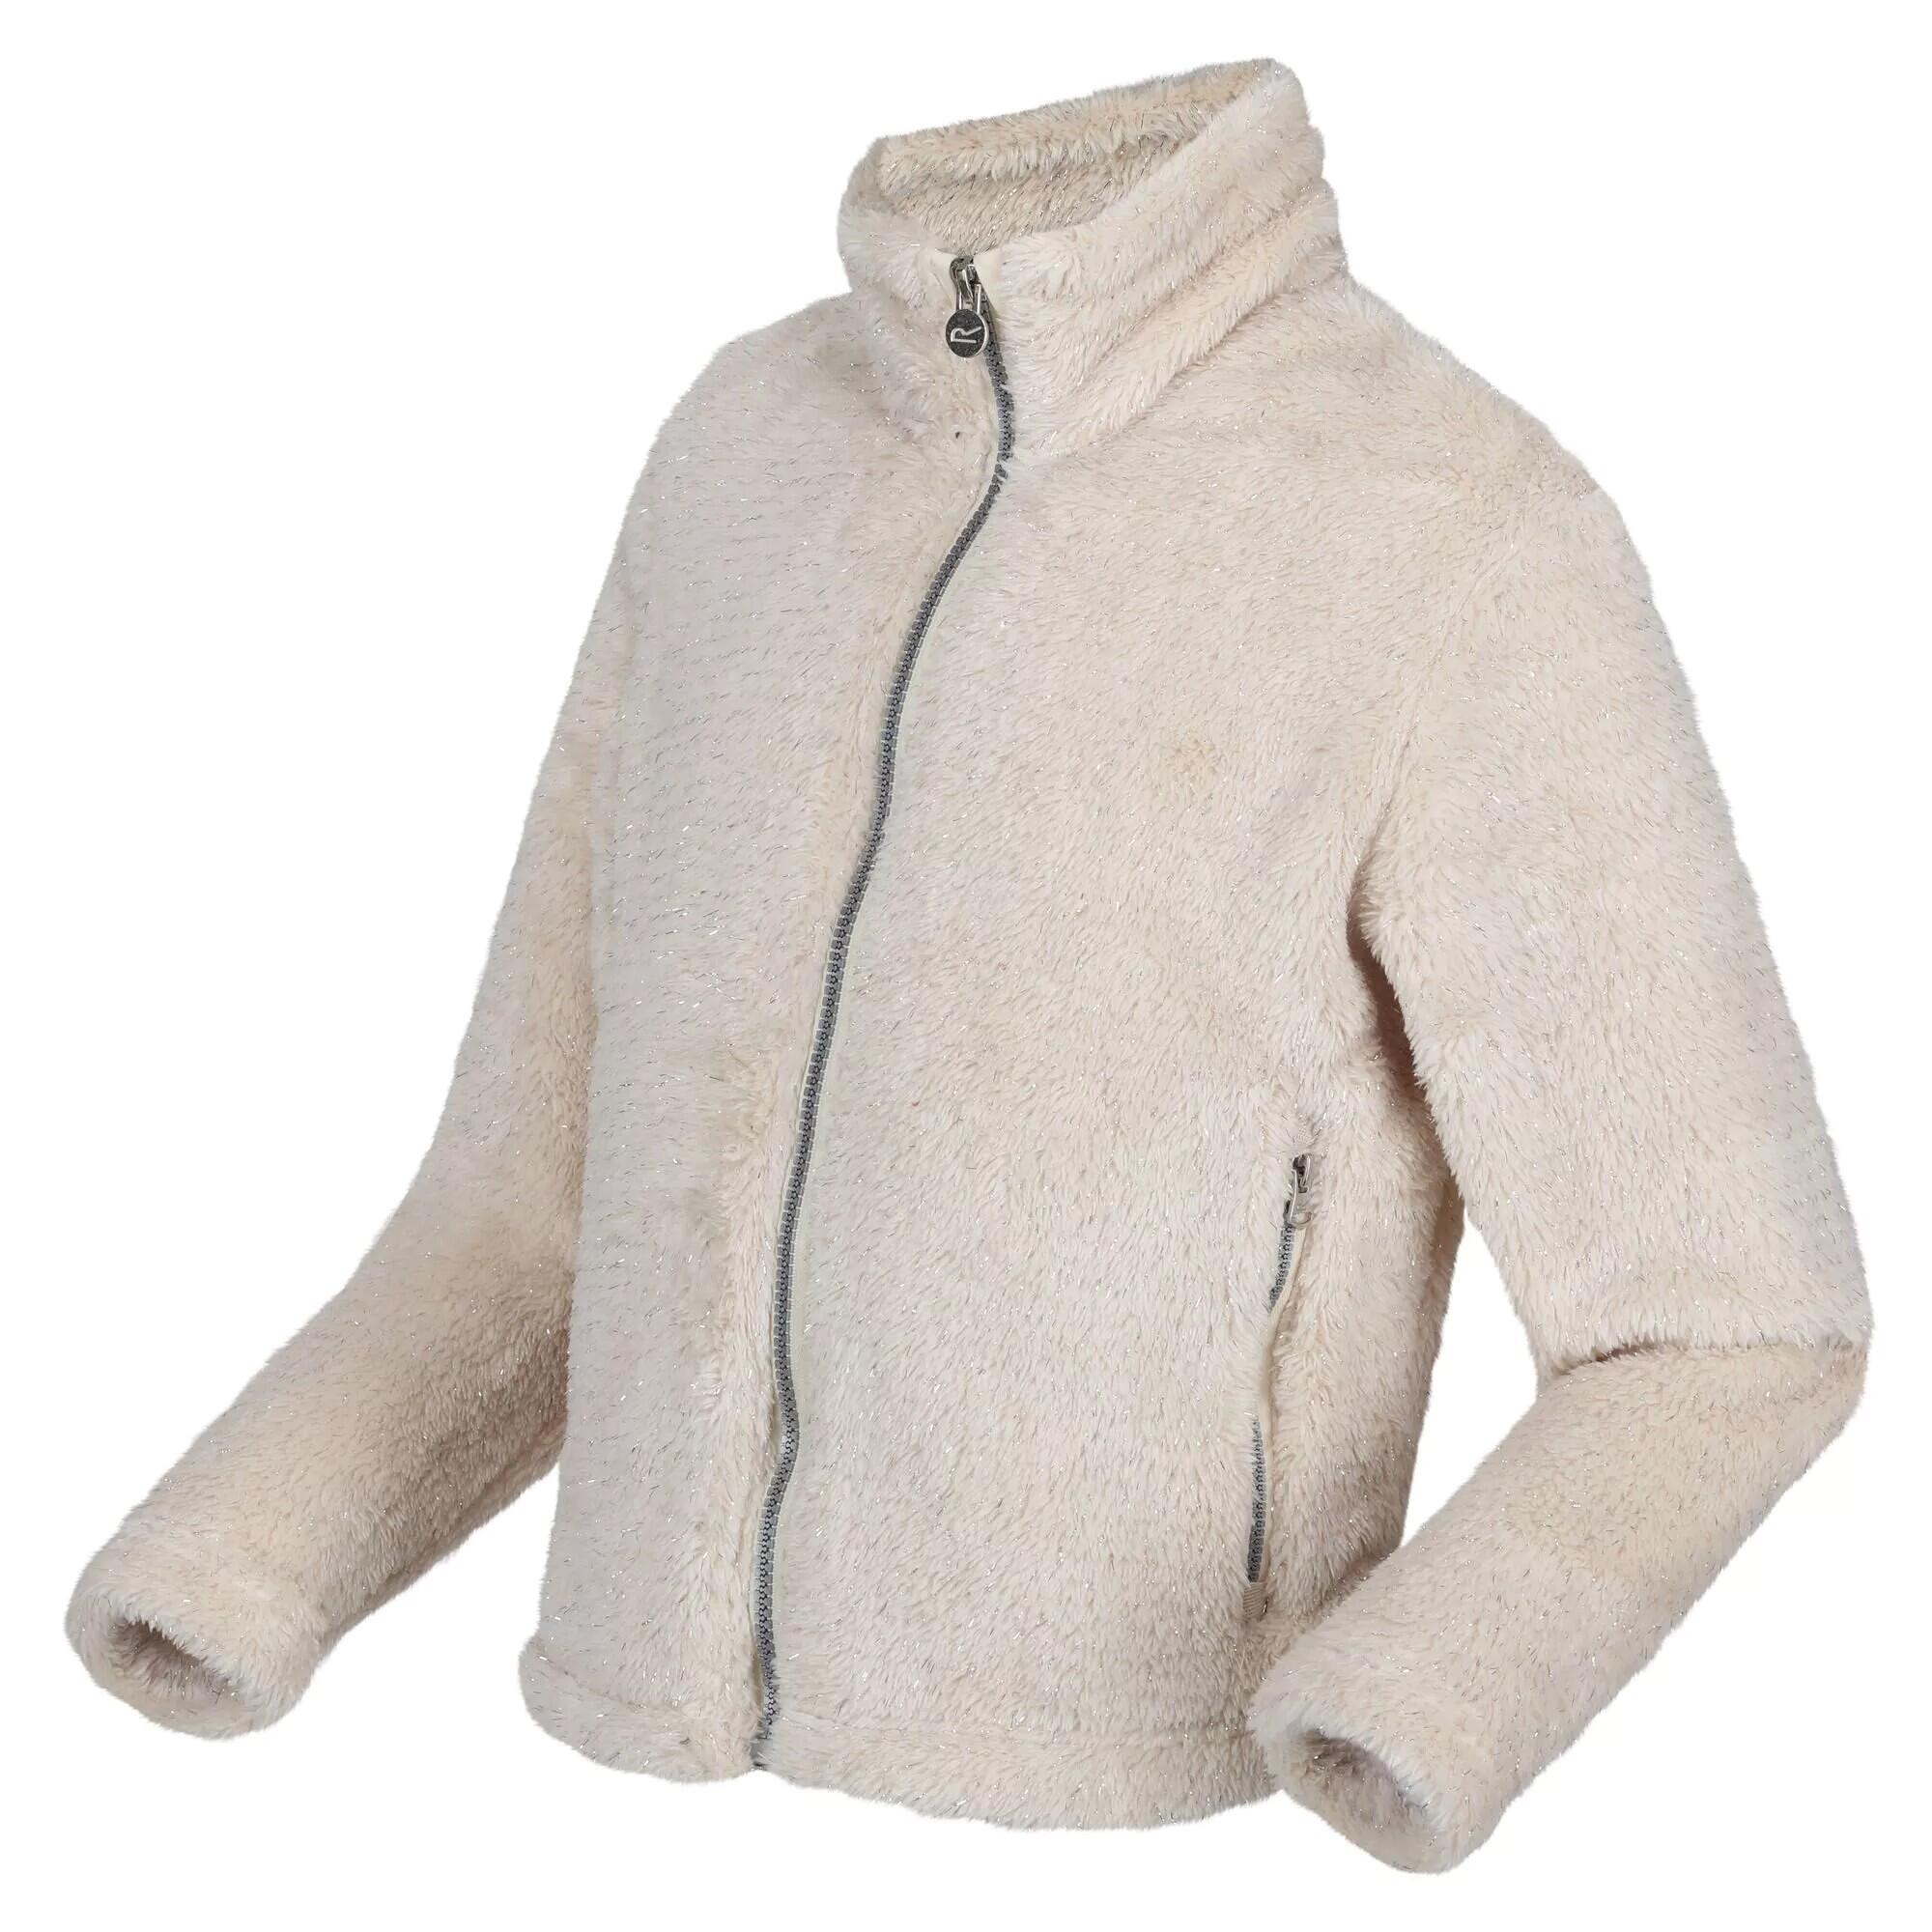 Childrens/Kids Kallye Ripple Fleece Jacket (Light Vanilla) 4/5